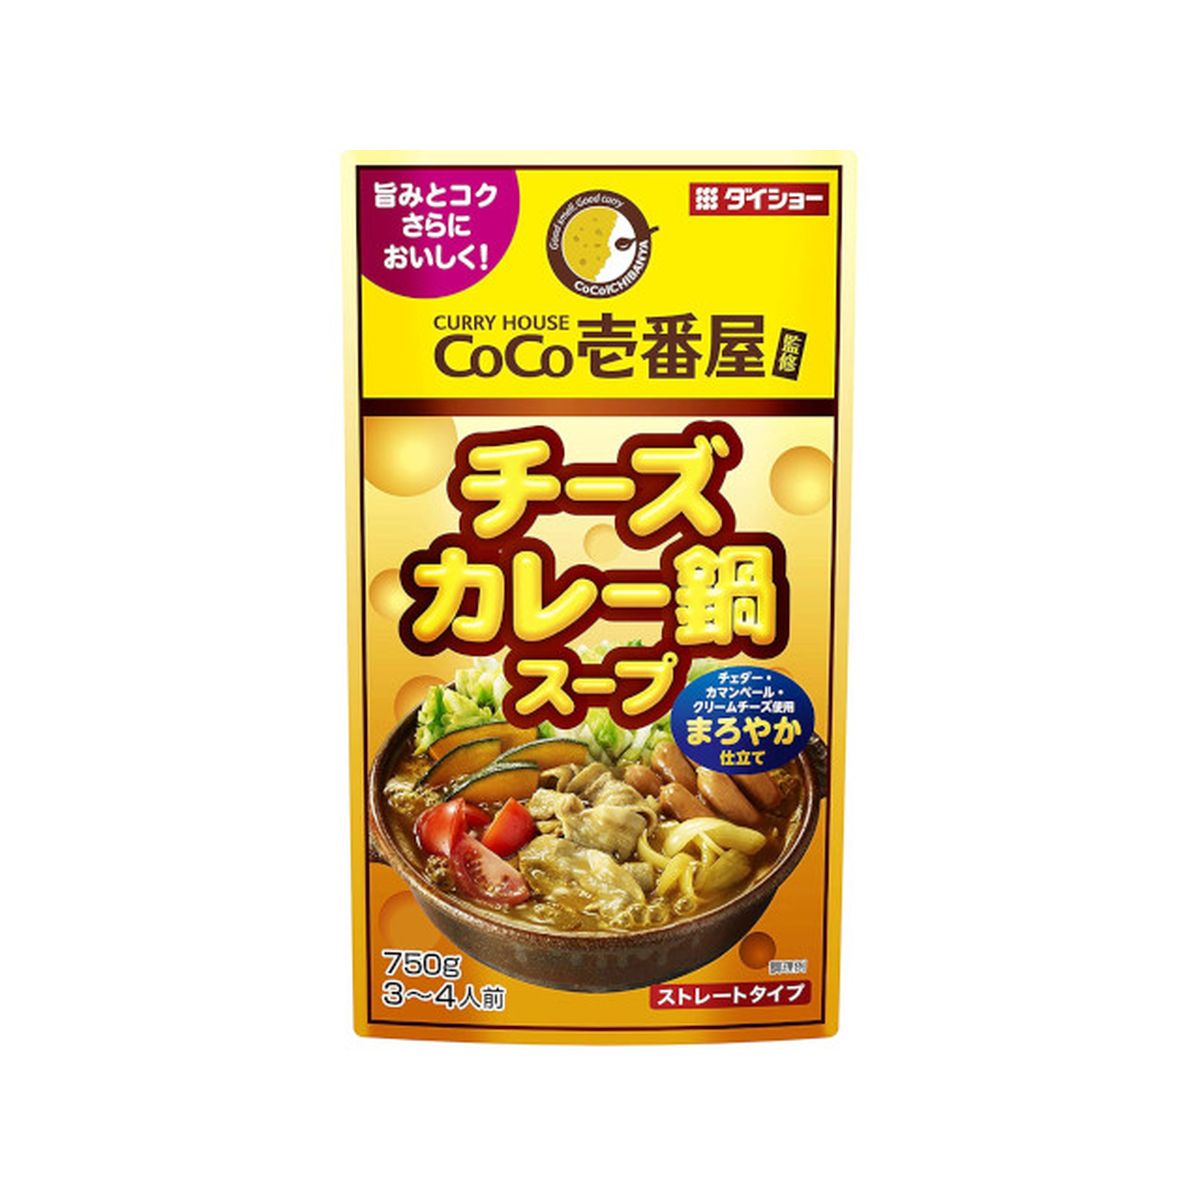 【10個入り】ダイショー CoCo壱番屋 チーズカレー鍋スープ 750g